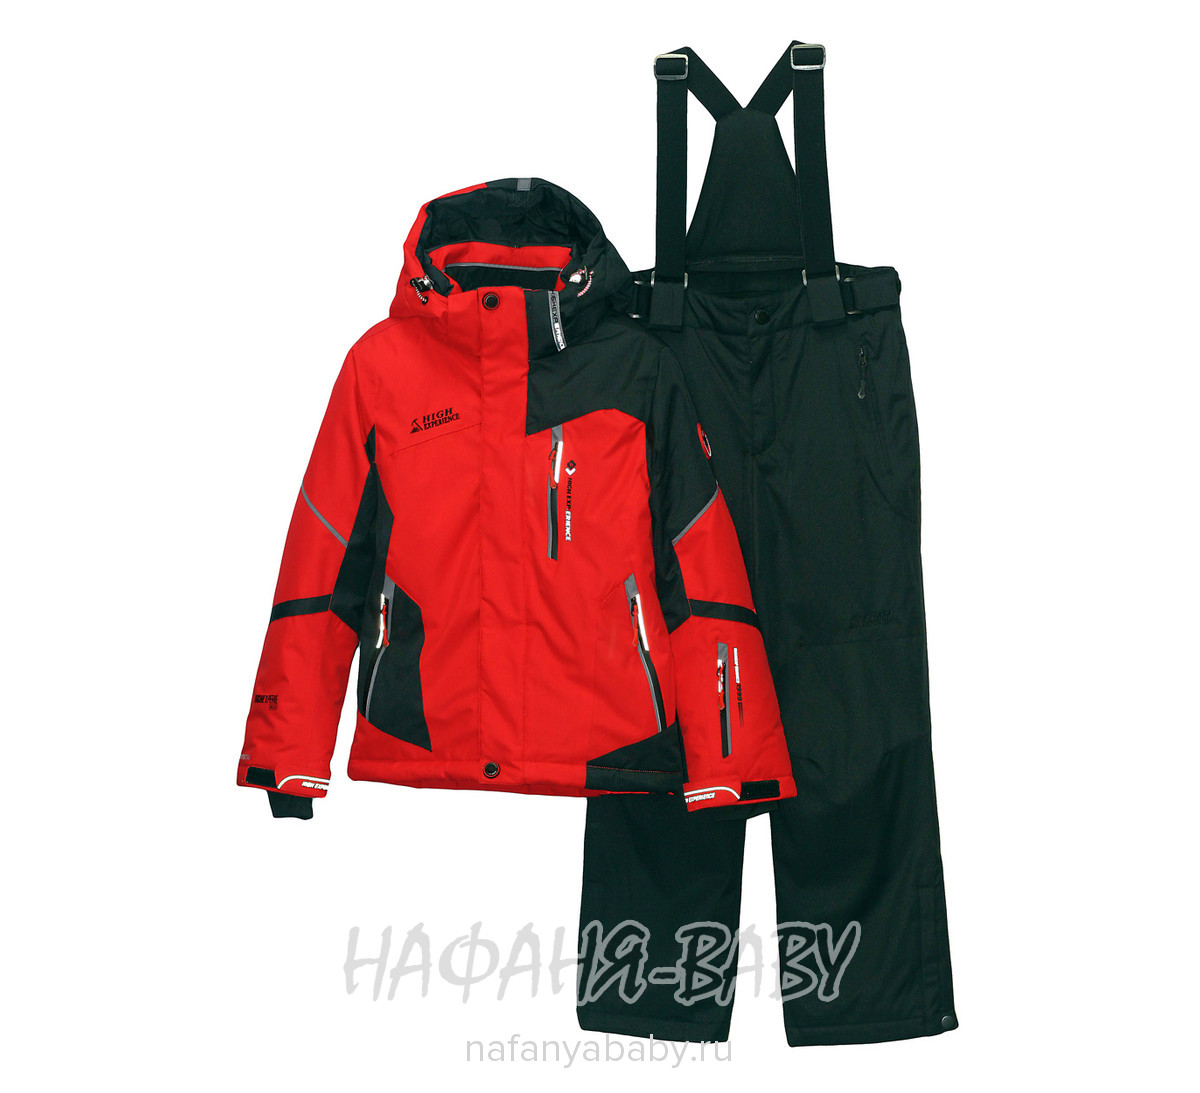 Подростковый горнолыжный костюм High Experience, купить в интернет магазине Нафаня. арт: 9170.